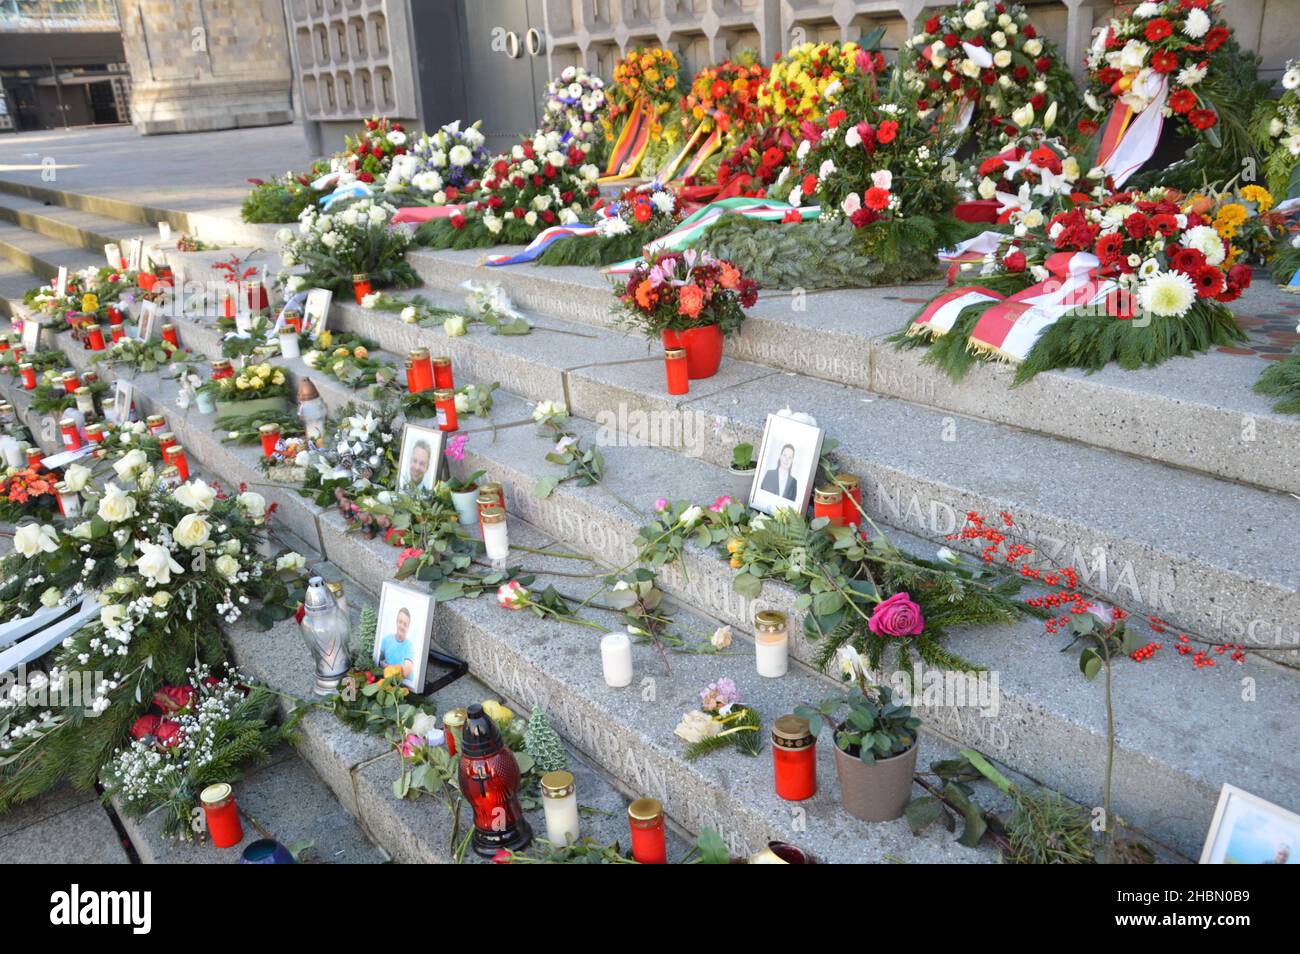 Memoriale per le 13 vittime dell'attacco terroristico islamico alla Breitscheidplatz di Berlino, Germania - 20 dicembre 2021. Foto Stock